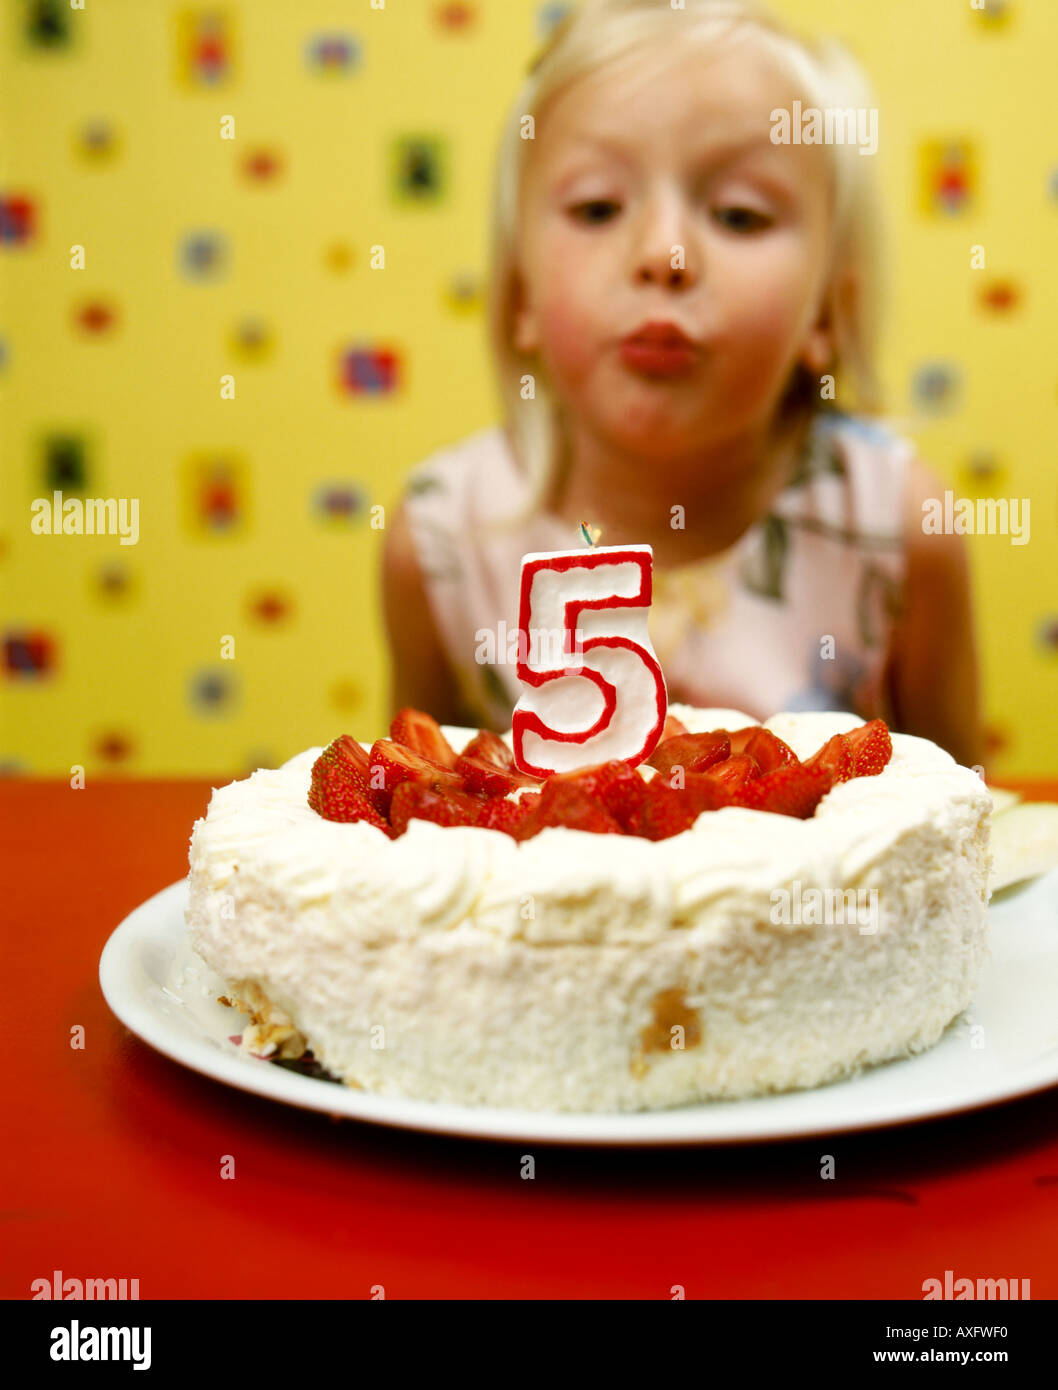 Piscine télévision prix mur de papier design crée petite fille blonde 510 fête Célébrer anniversaire gâteau essayer puff souffler flou bougie Banque D'Images